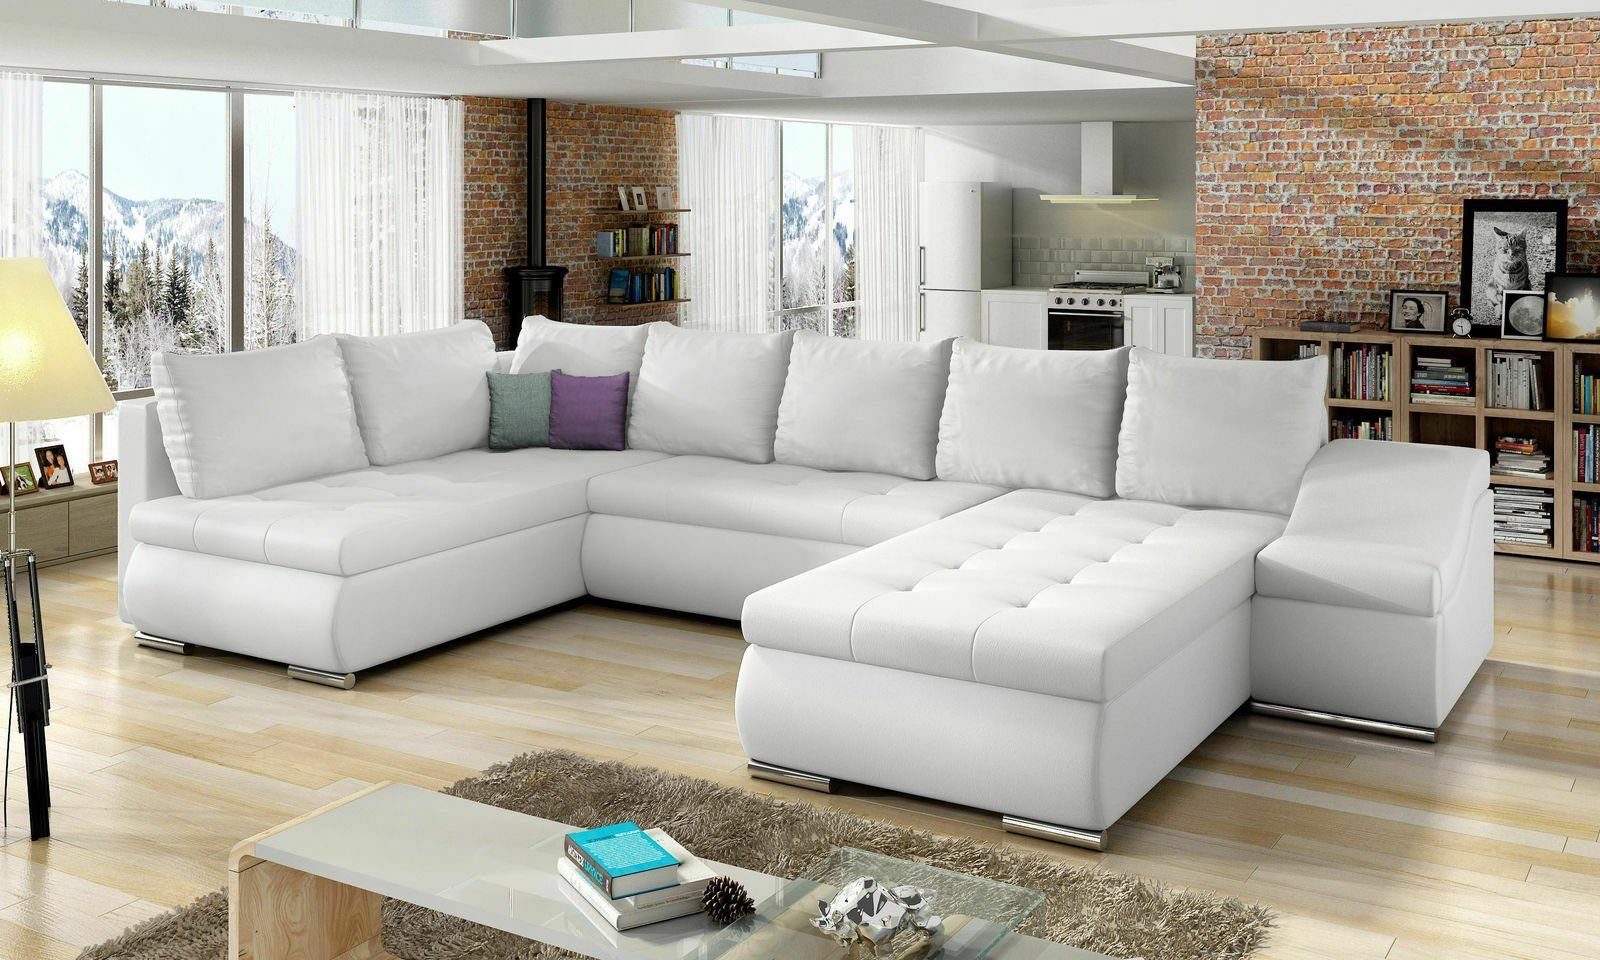 Extrem beliebt zu günstigen Preisen JVmoebel Ecksofa, XXL Big Couch Polster Ecksofa Weiß Couchen Sofa Wohnlandschaft Sofas